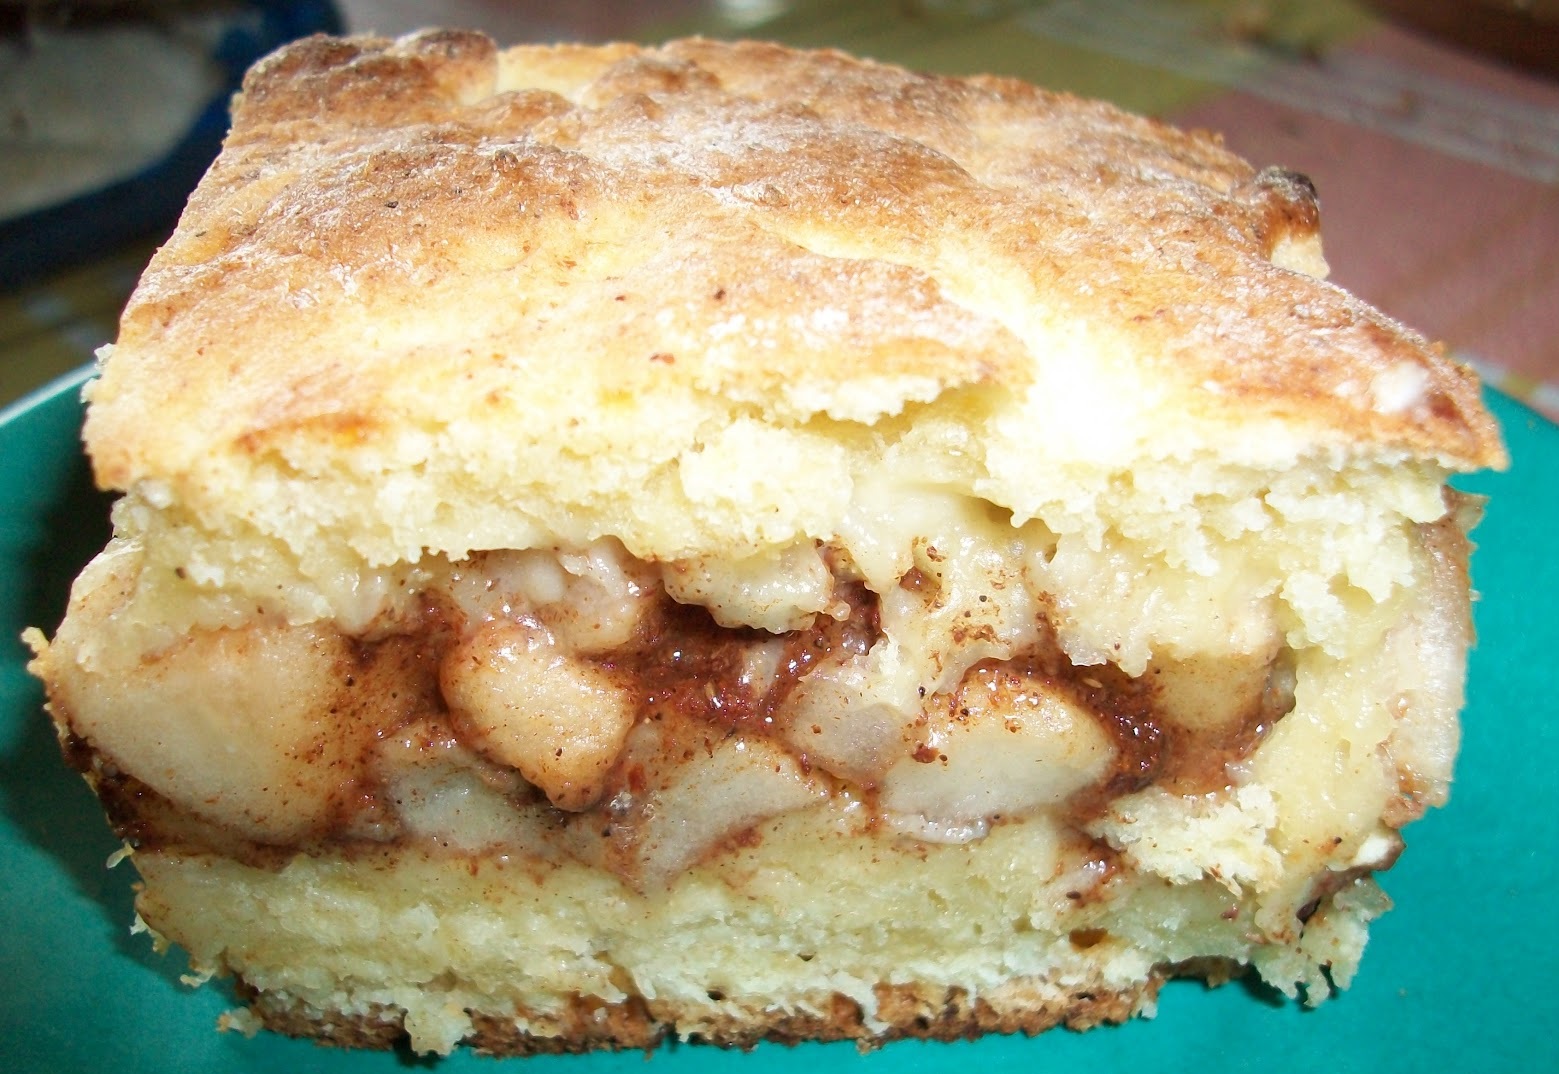 Obuolių pyragas "Vaikystės skonis" - mėgiamas net pačių išrankiausių vaikų!